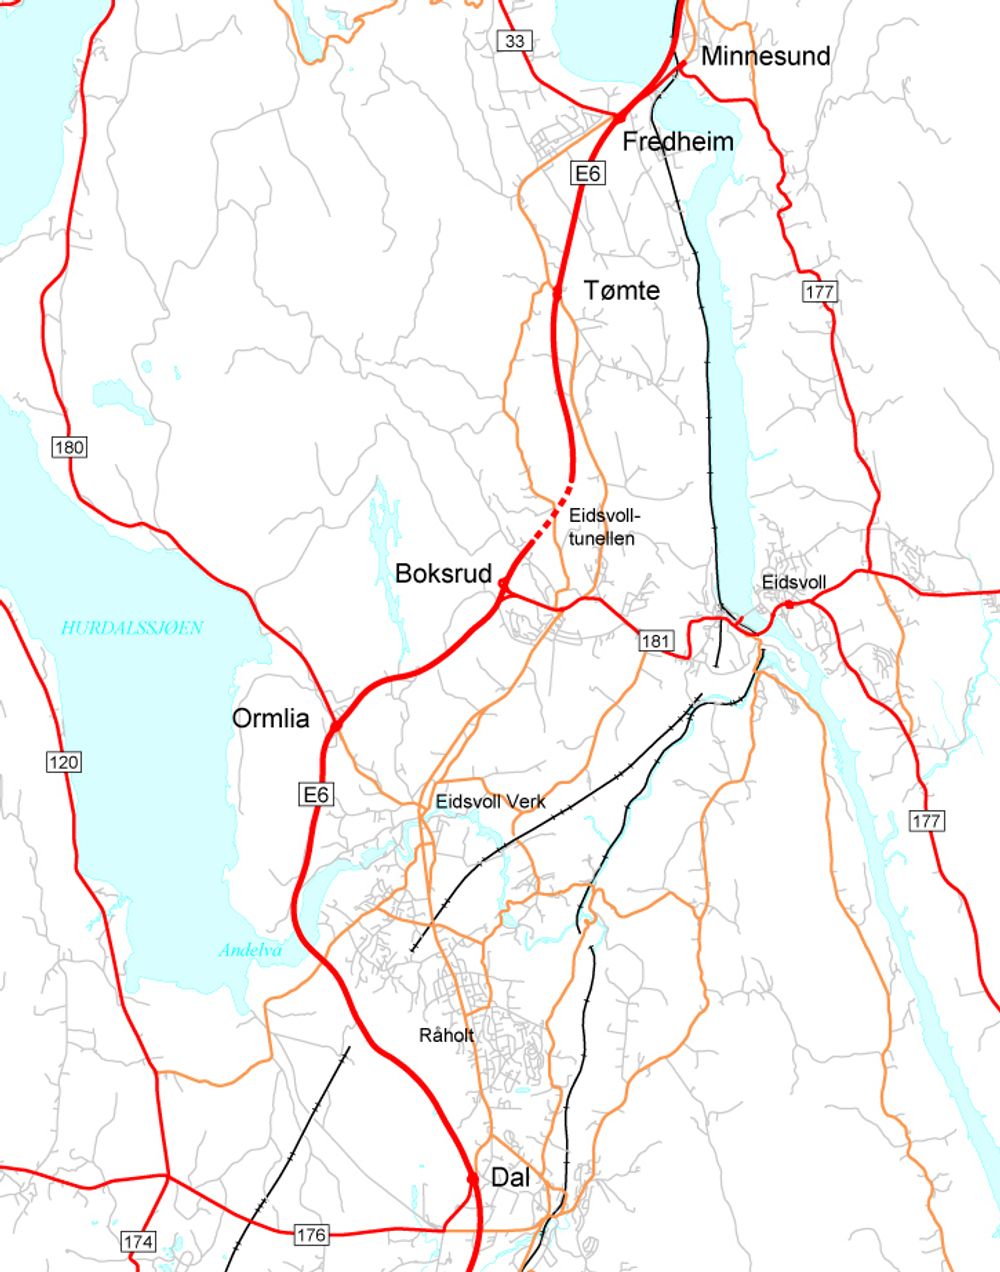 Begge de største kontraktene på utvidelse av E 6 mellom Dal og Minnesund er nå fordelt. Mesta tar parsellen Dal-Boksrud, Veidekke tar parsellen Boksrud-Minnesund.